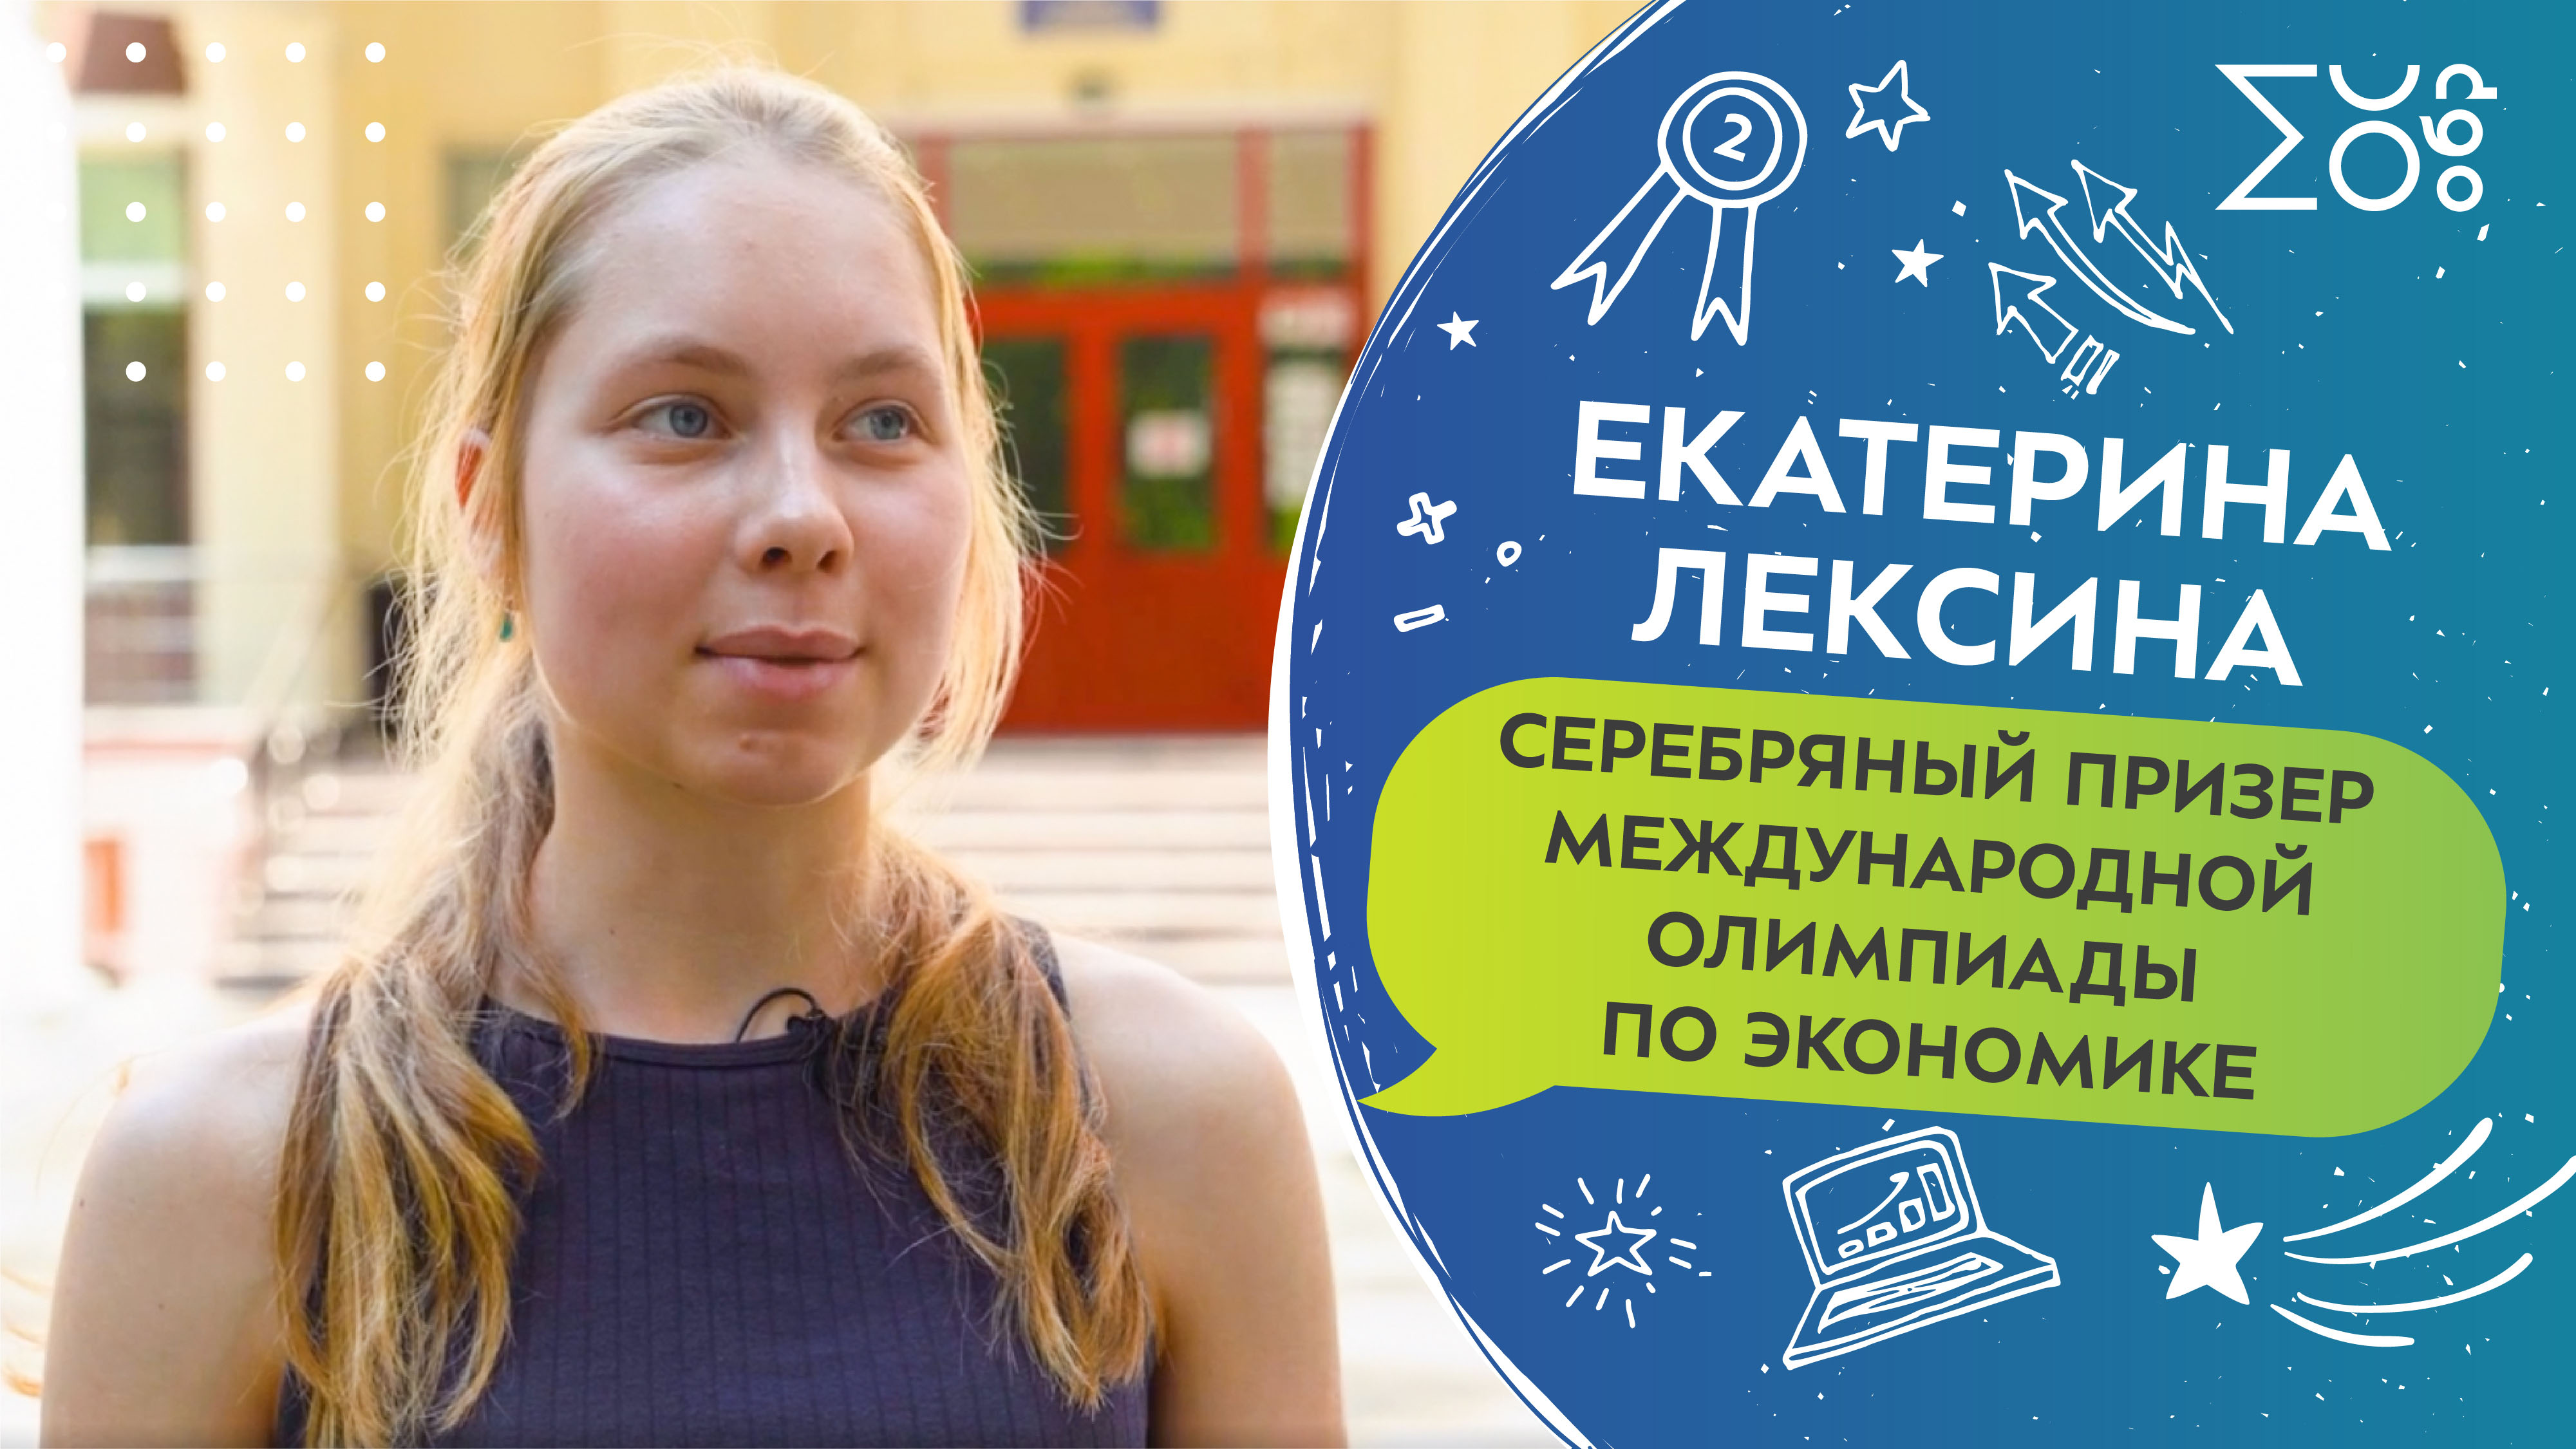 Екатерина Лексина, серебряный призер Международной олимпиады по экономике